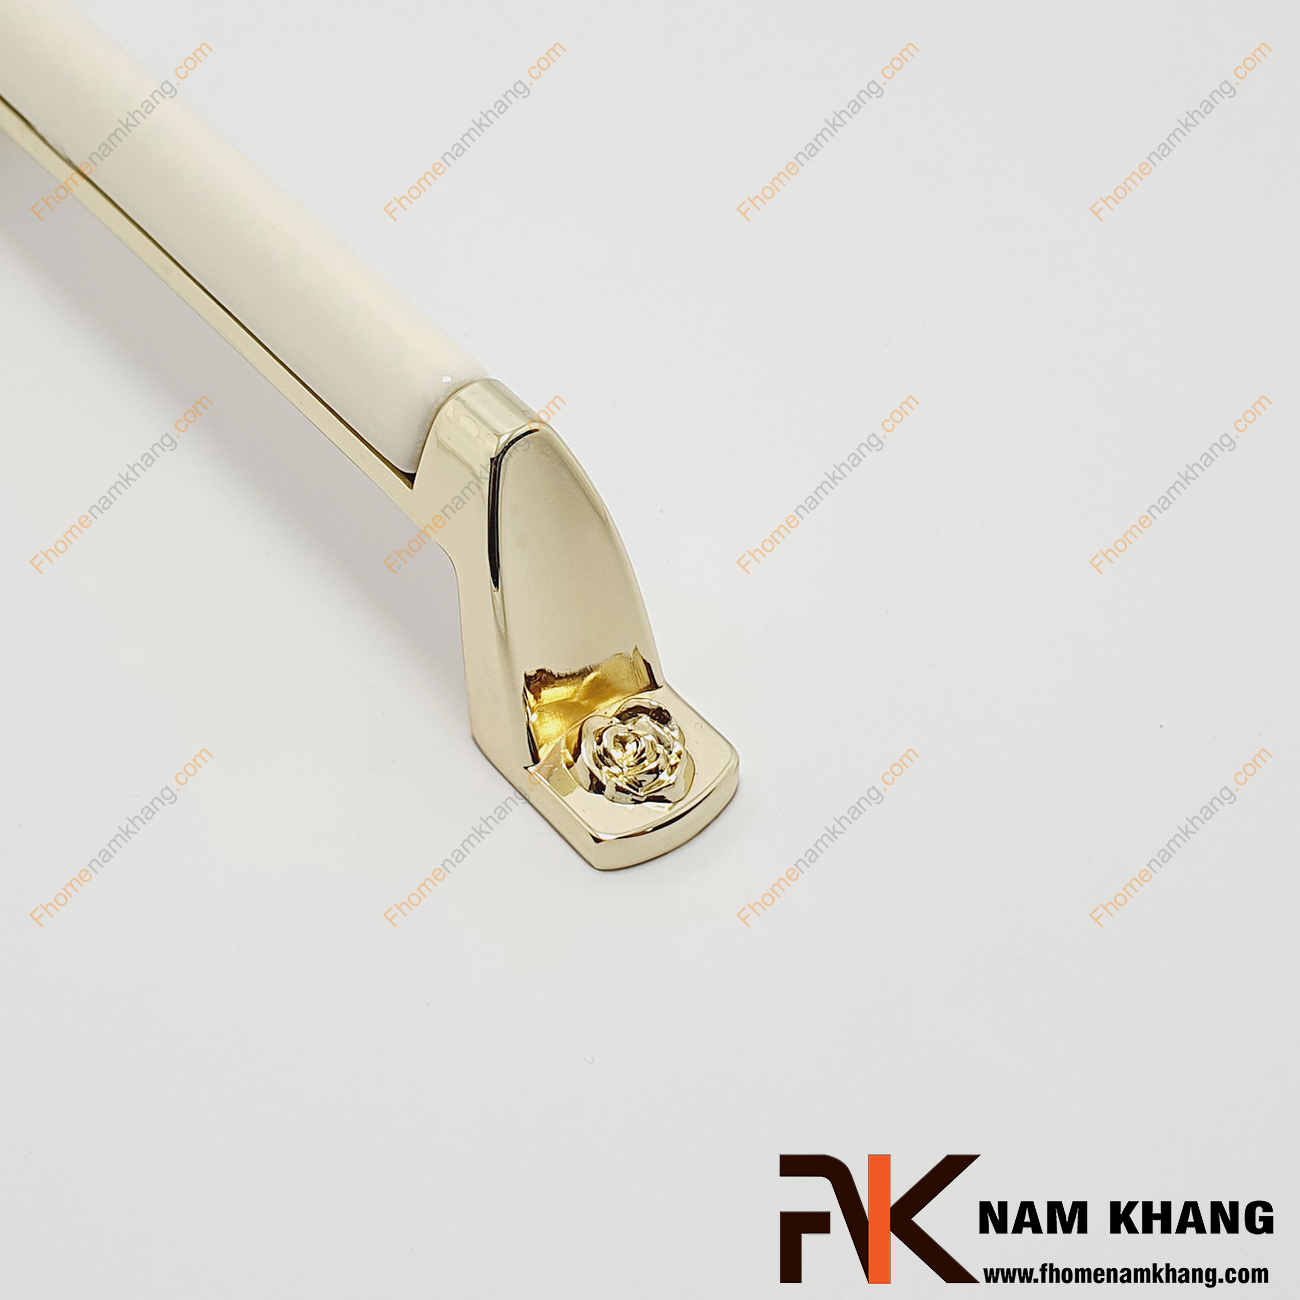 Tay nắm tủ phối sứ trắng NK359-VT có điểm nổi bật khi phối hợp hợp kim vàng bóng với sứ cao cấp. Các đường nét của tay nắm được chú ý bo tròn góc cạnh rất tự nhiên nhưng rất mềm mại và an toàn khi sử dụng.